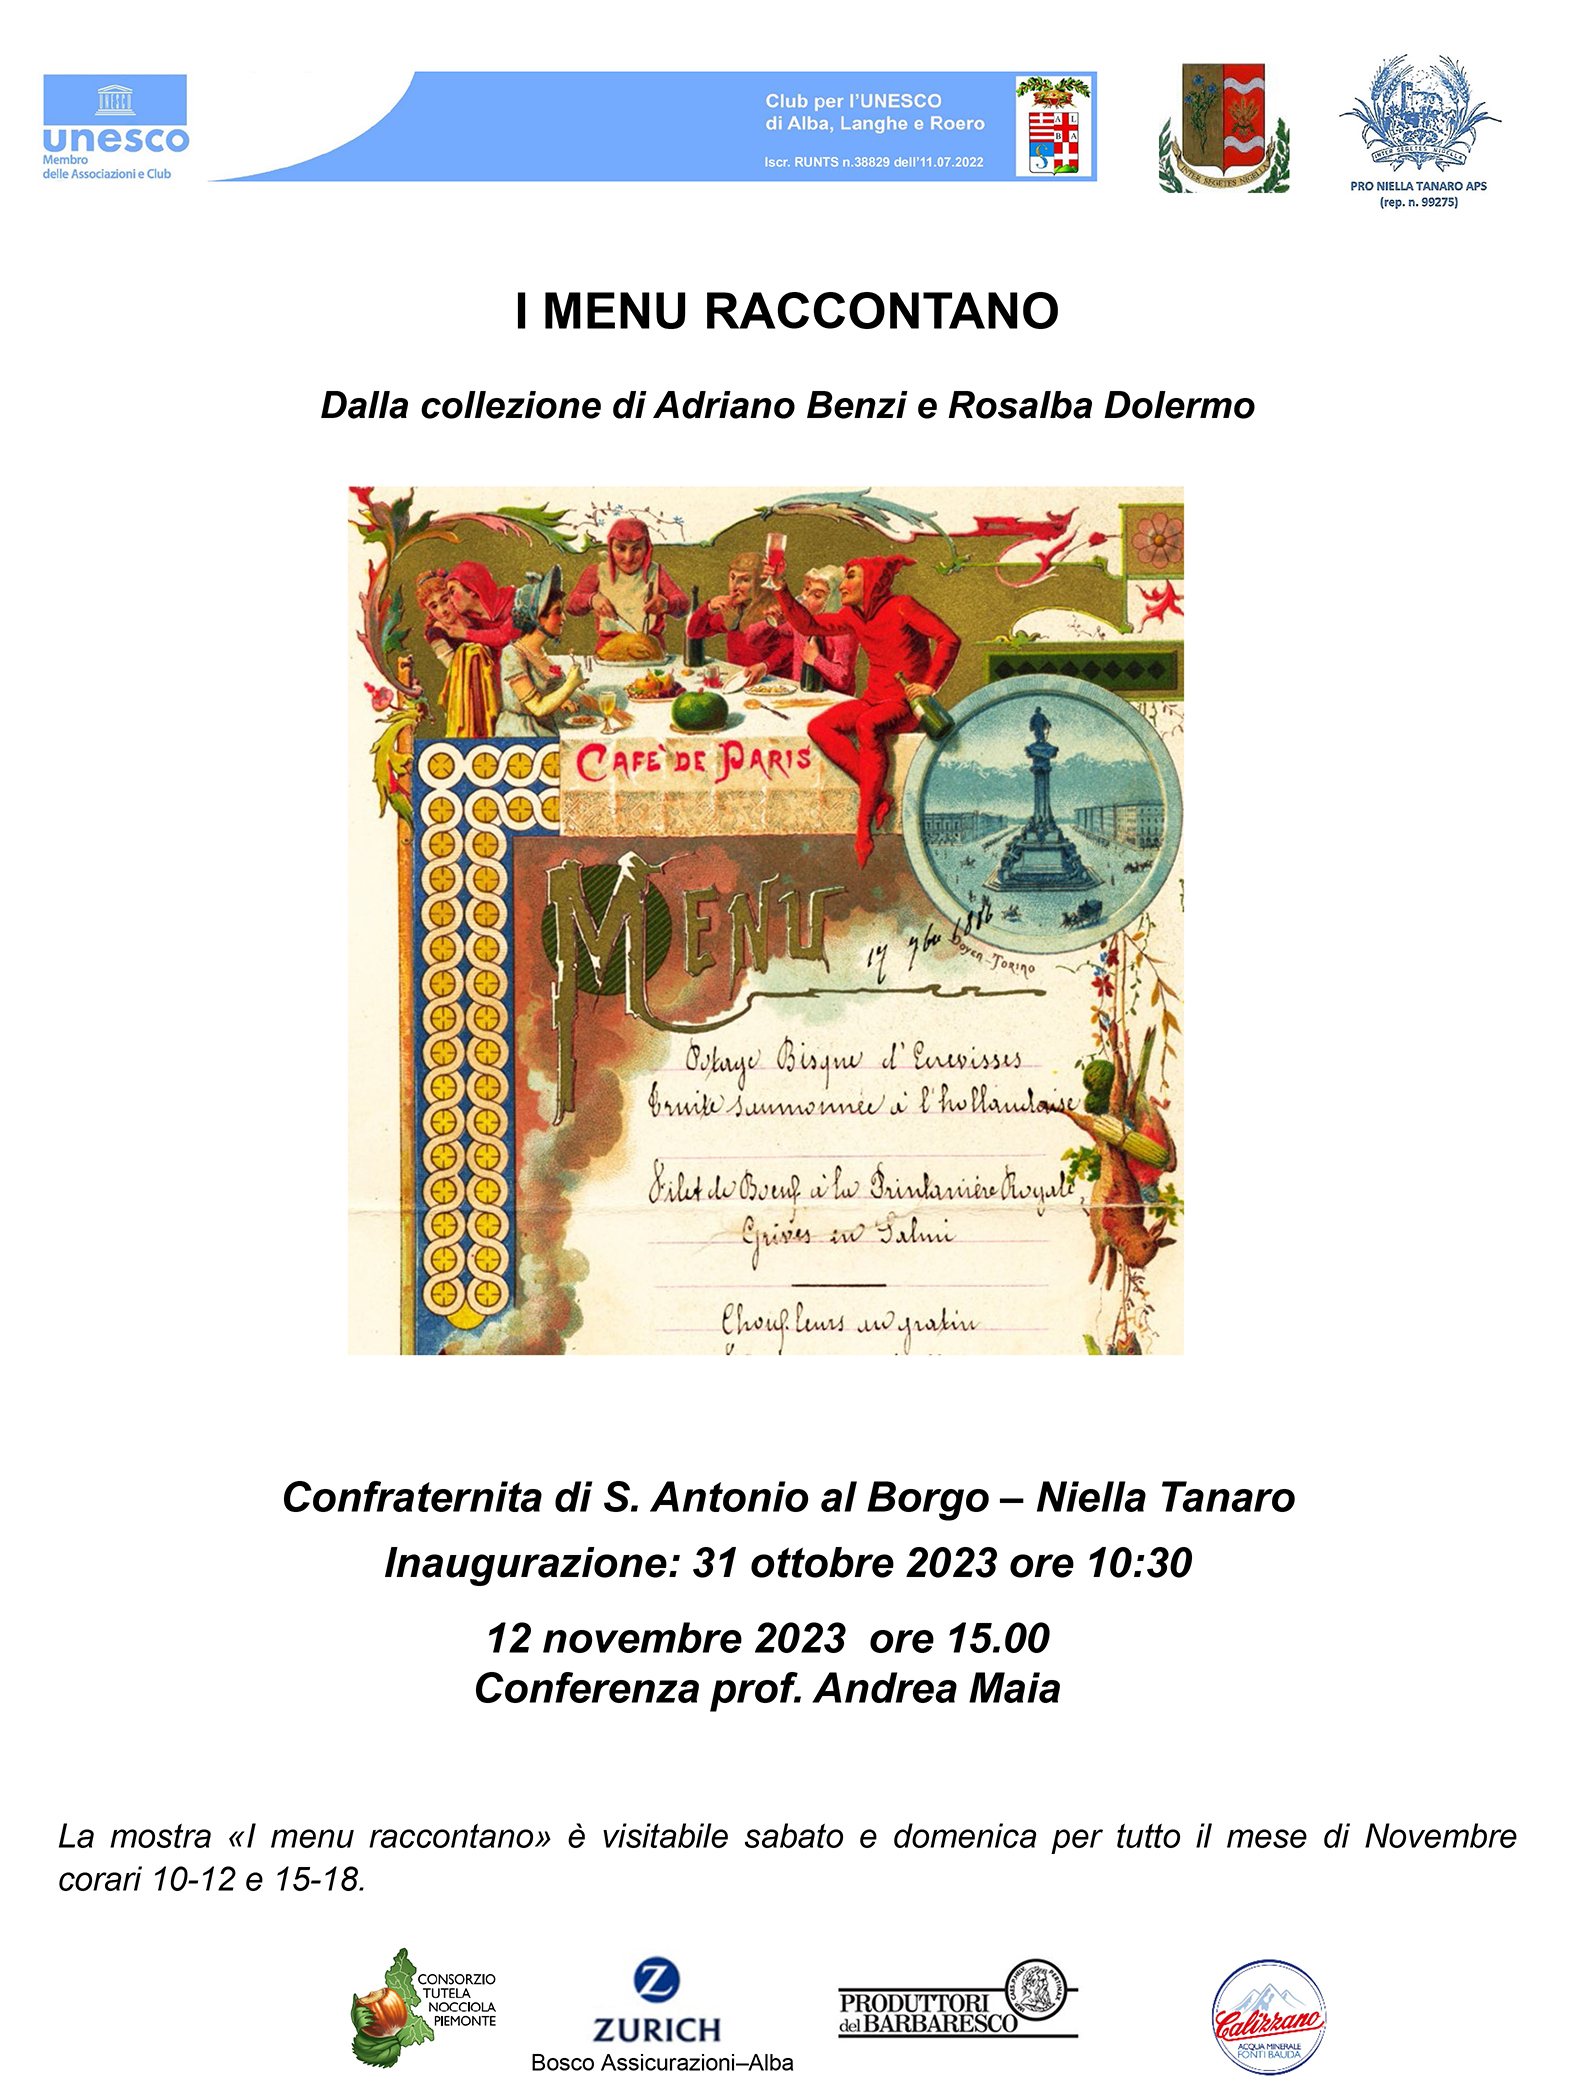 MOSTRA «I MENU RACCONTANO» Niella Tanaro - Confraternita di Sant’Antonio al Borgo 